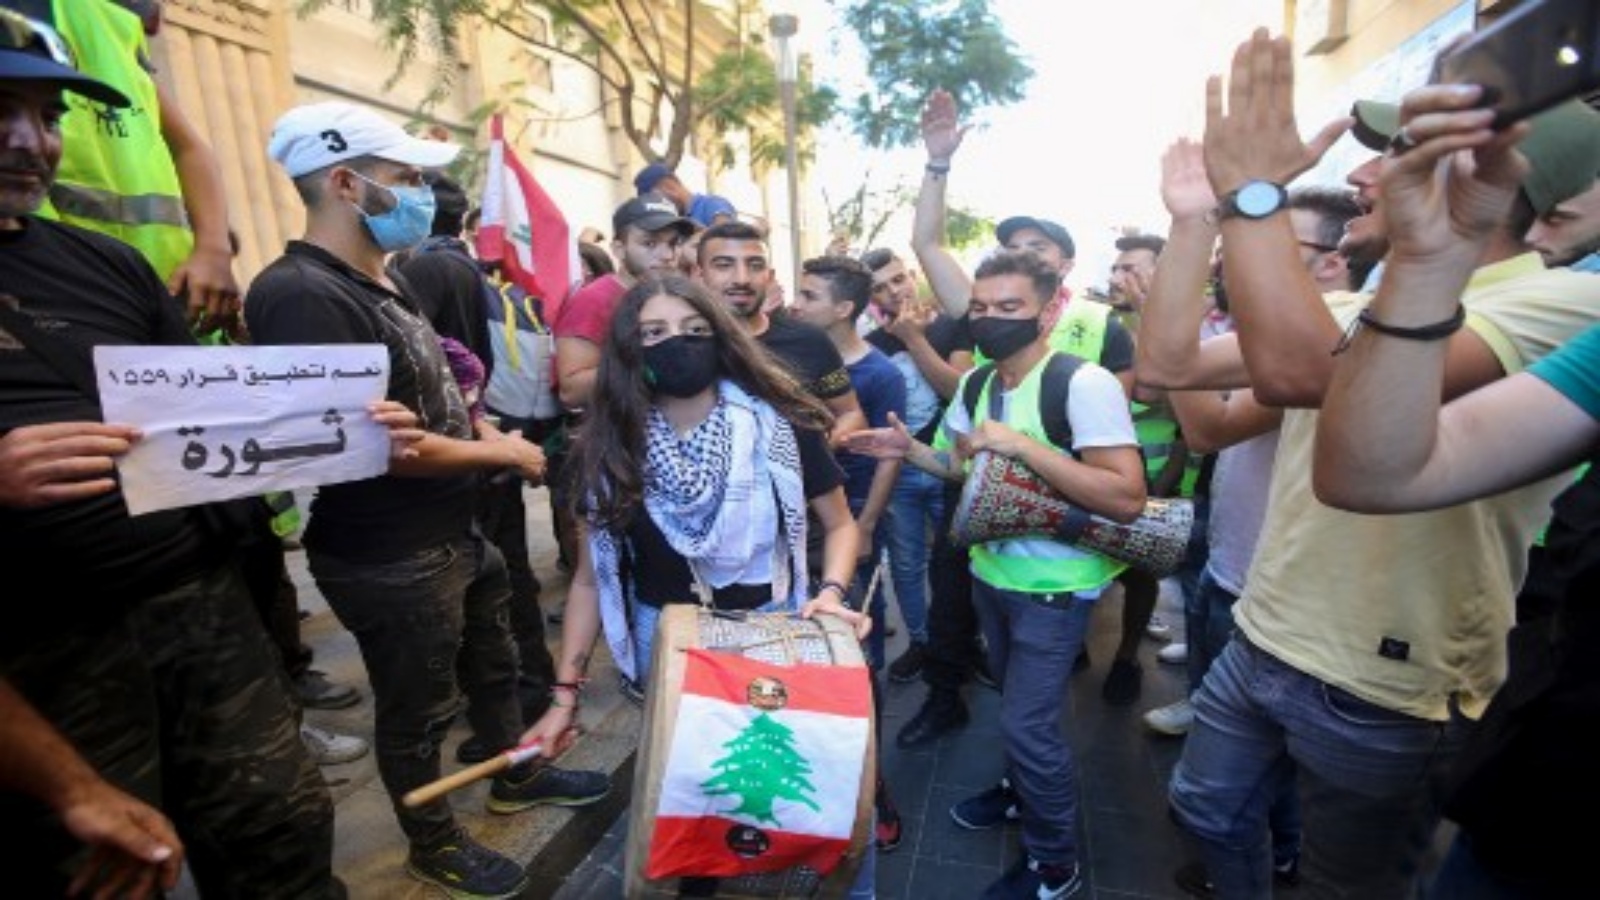 متظاهرون لبنانيون يعزفون الموسيقى خلال مظاهرة بمناسبة الذكرى الأولى لحركة احتجاجية غير طائفية ، في منطقة وسط العاصمة بيروت في 17 تشرين الأول 2020